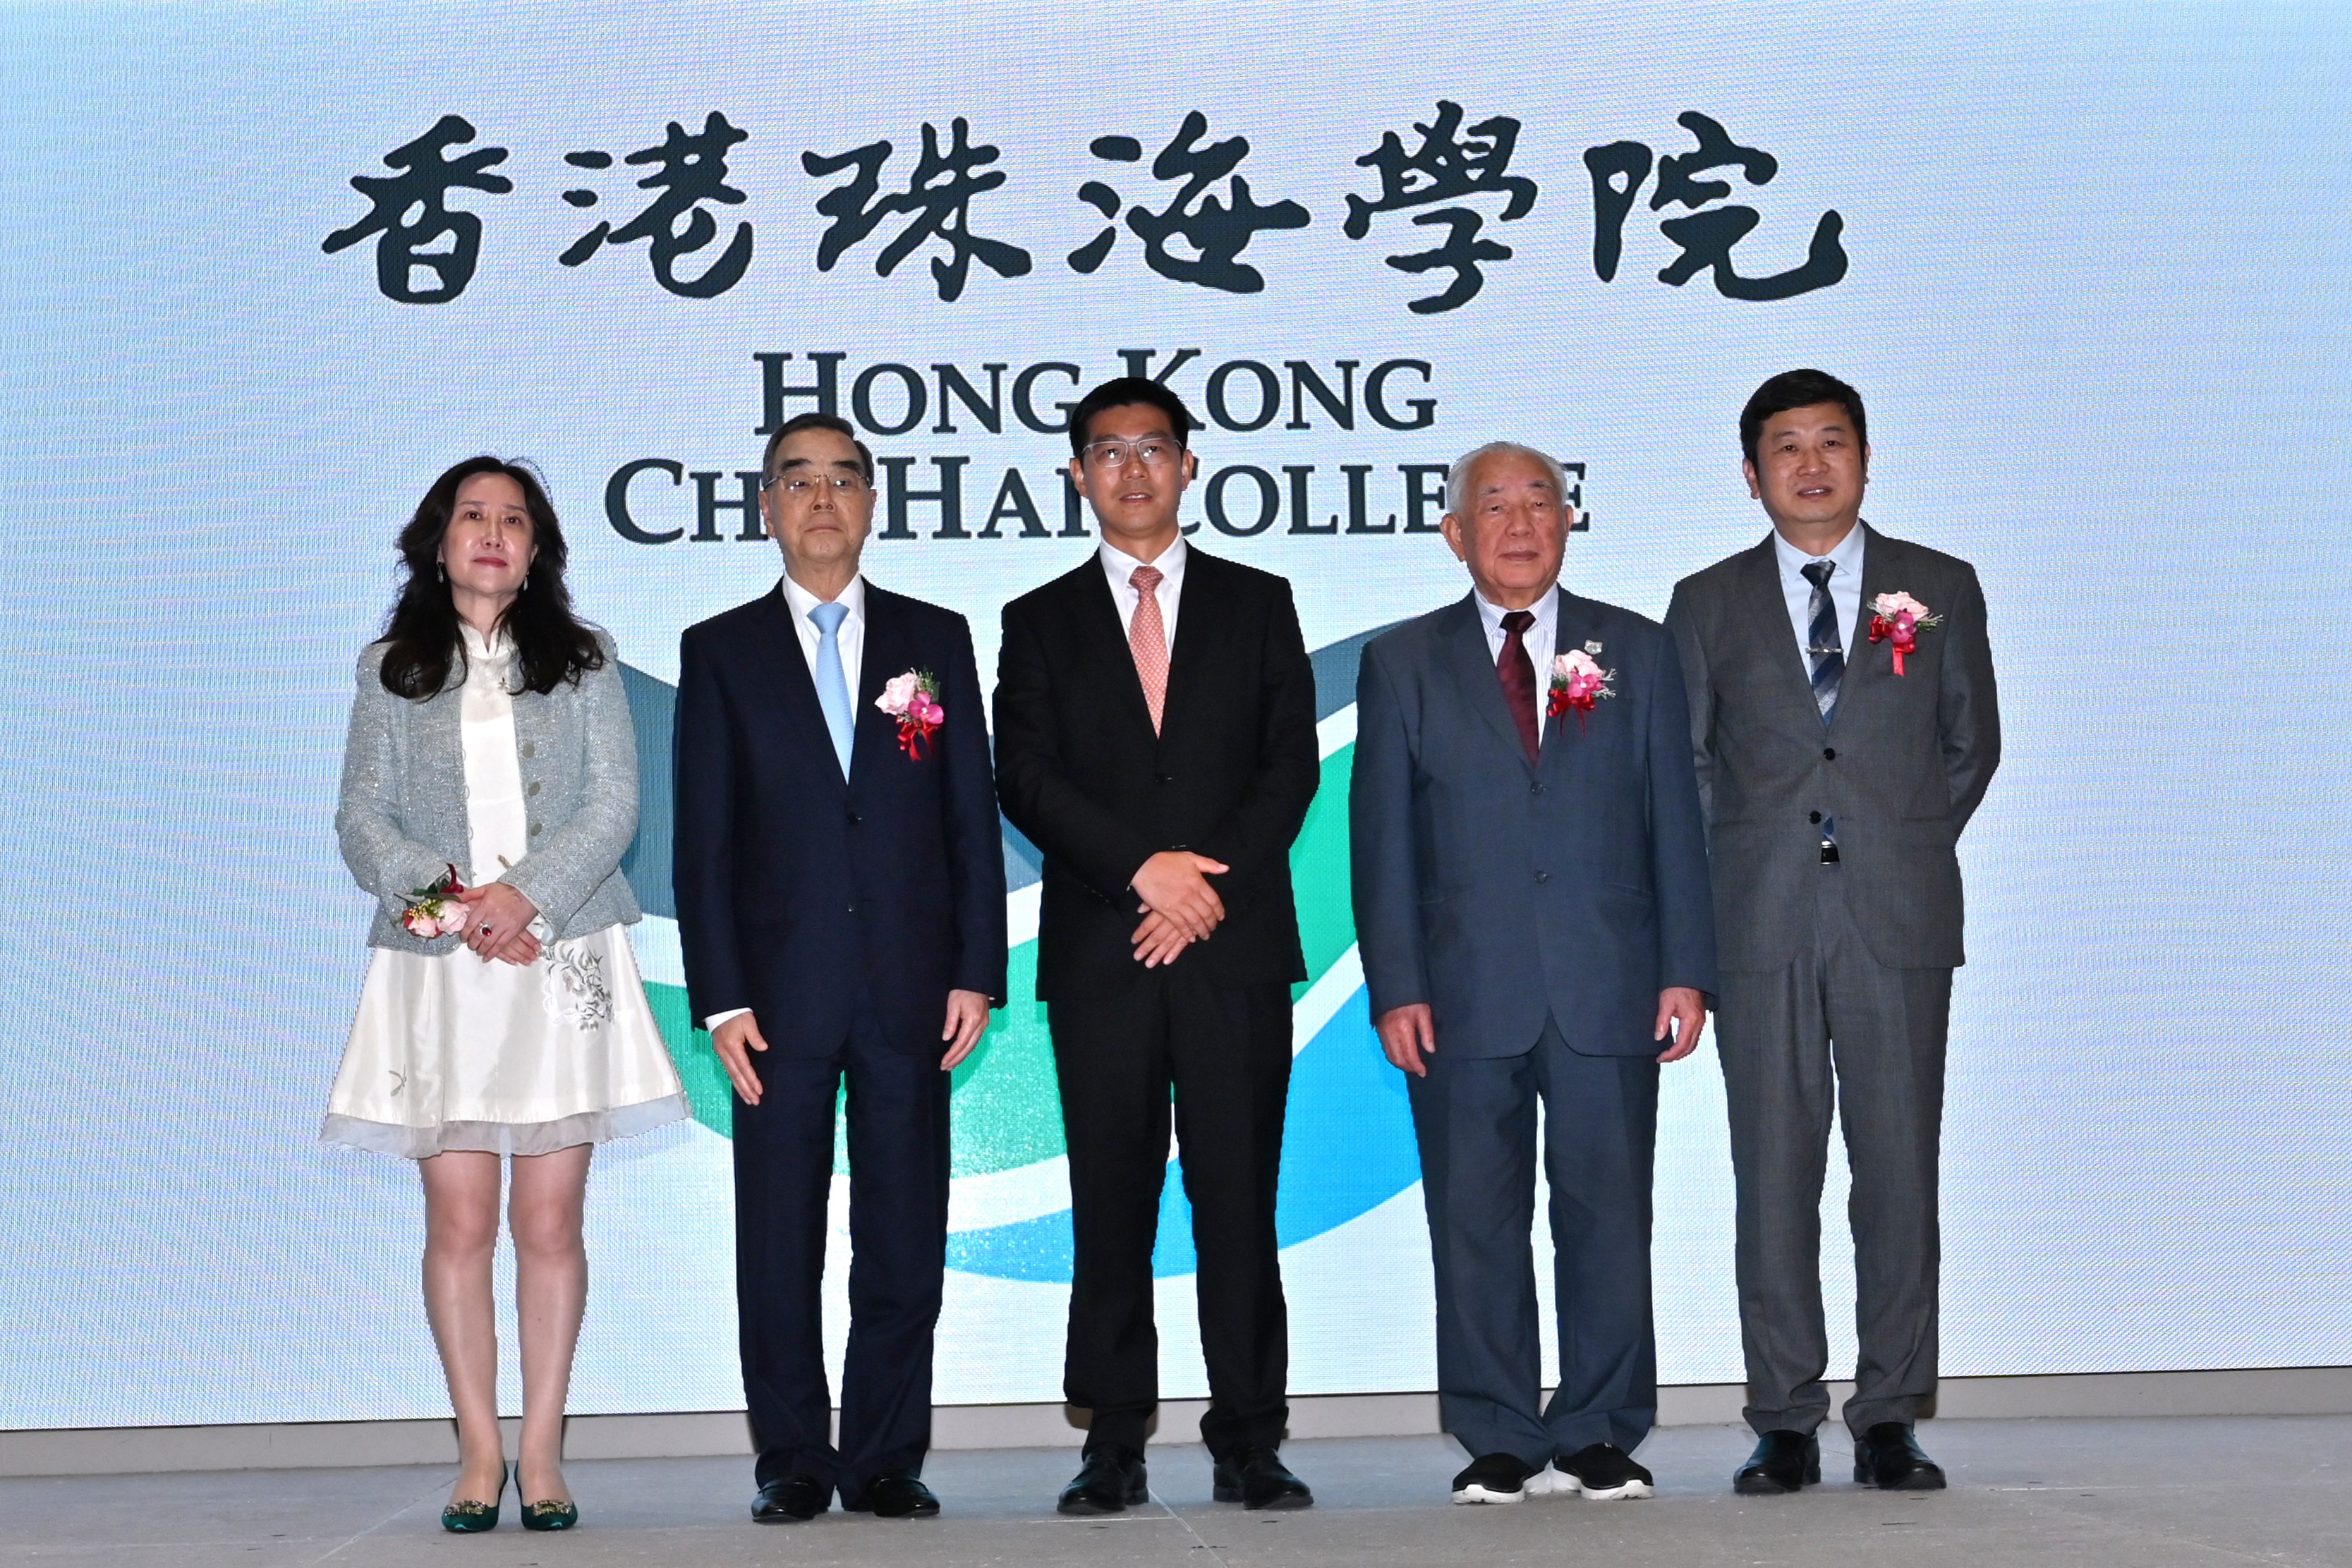 香港珠海學院新學年舉辦啟動典禮 配合新校名推出新校徽 掌握大灣區歷史機遇